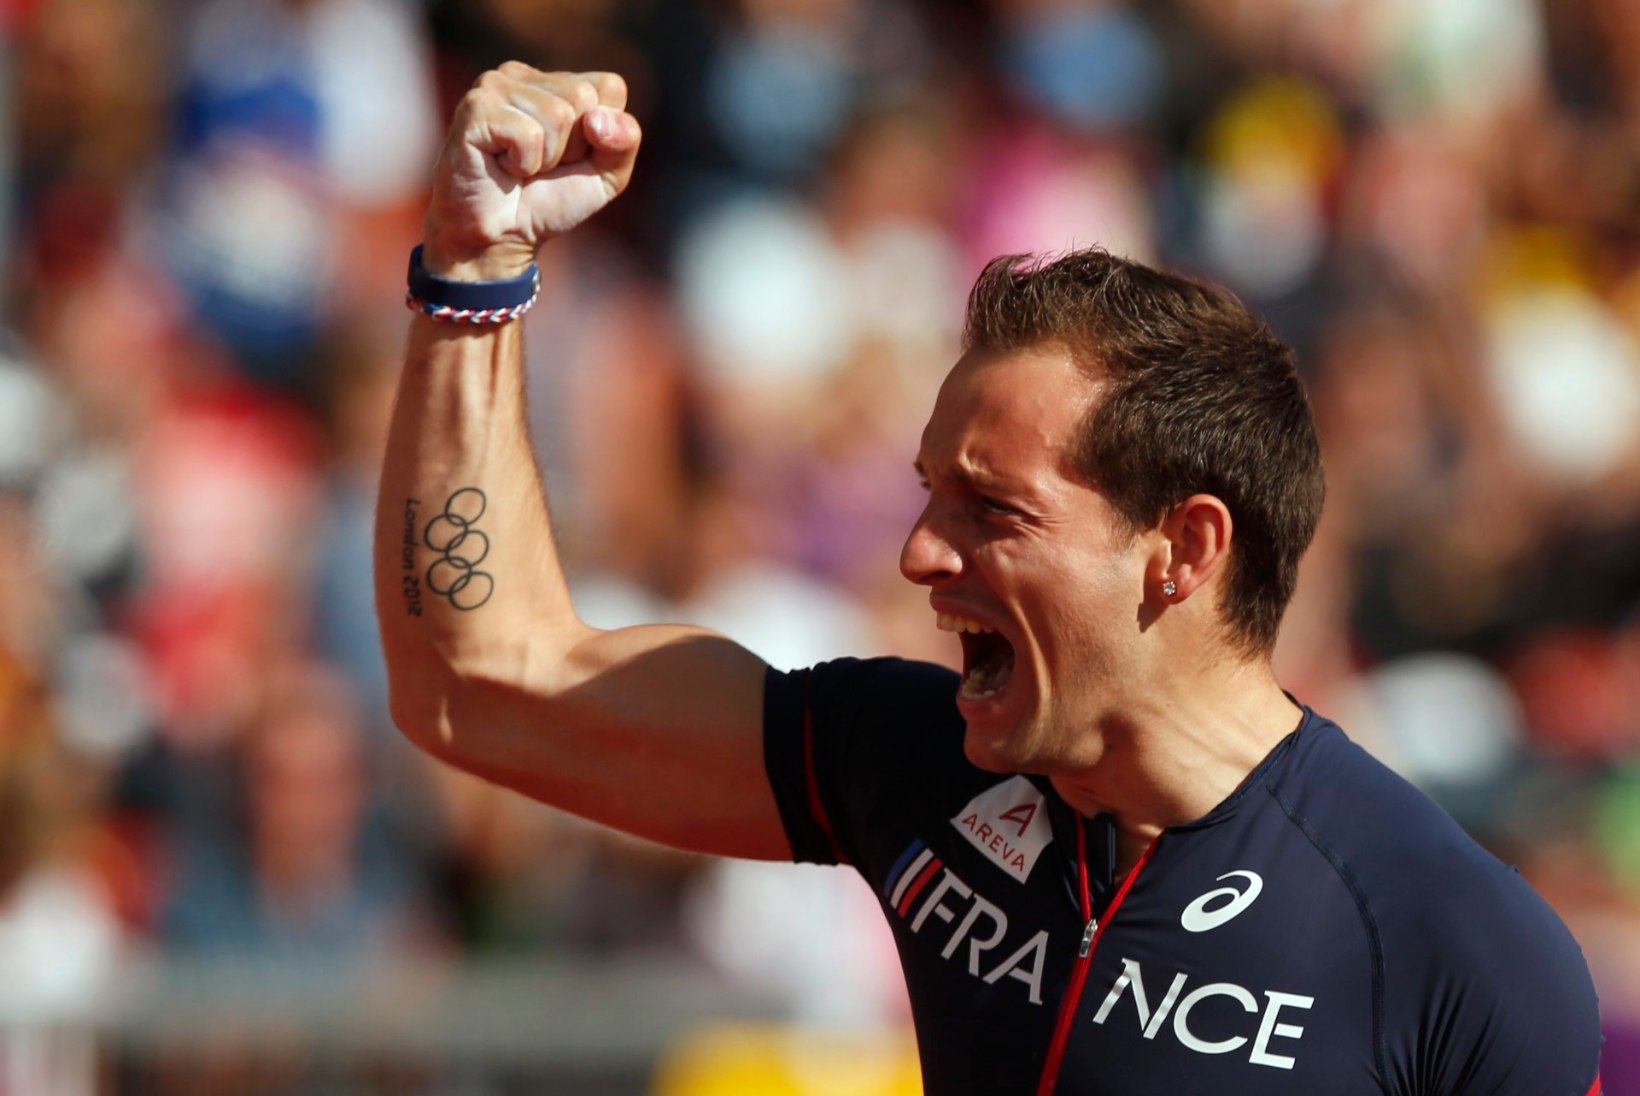 Renaud Lavillenie üritas teivashüppes maailmarekordit parandada!